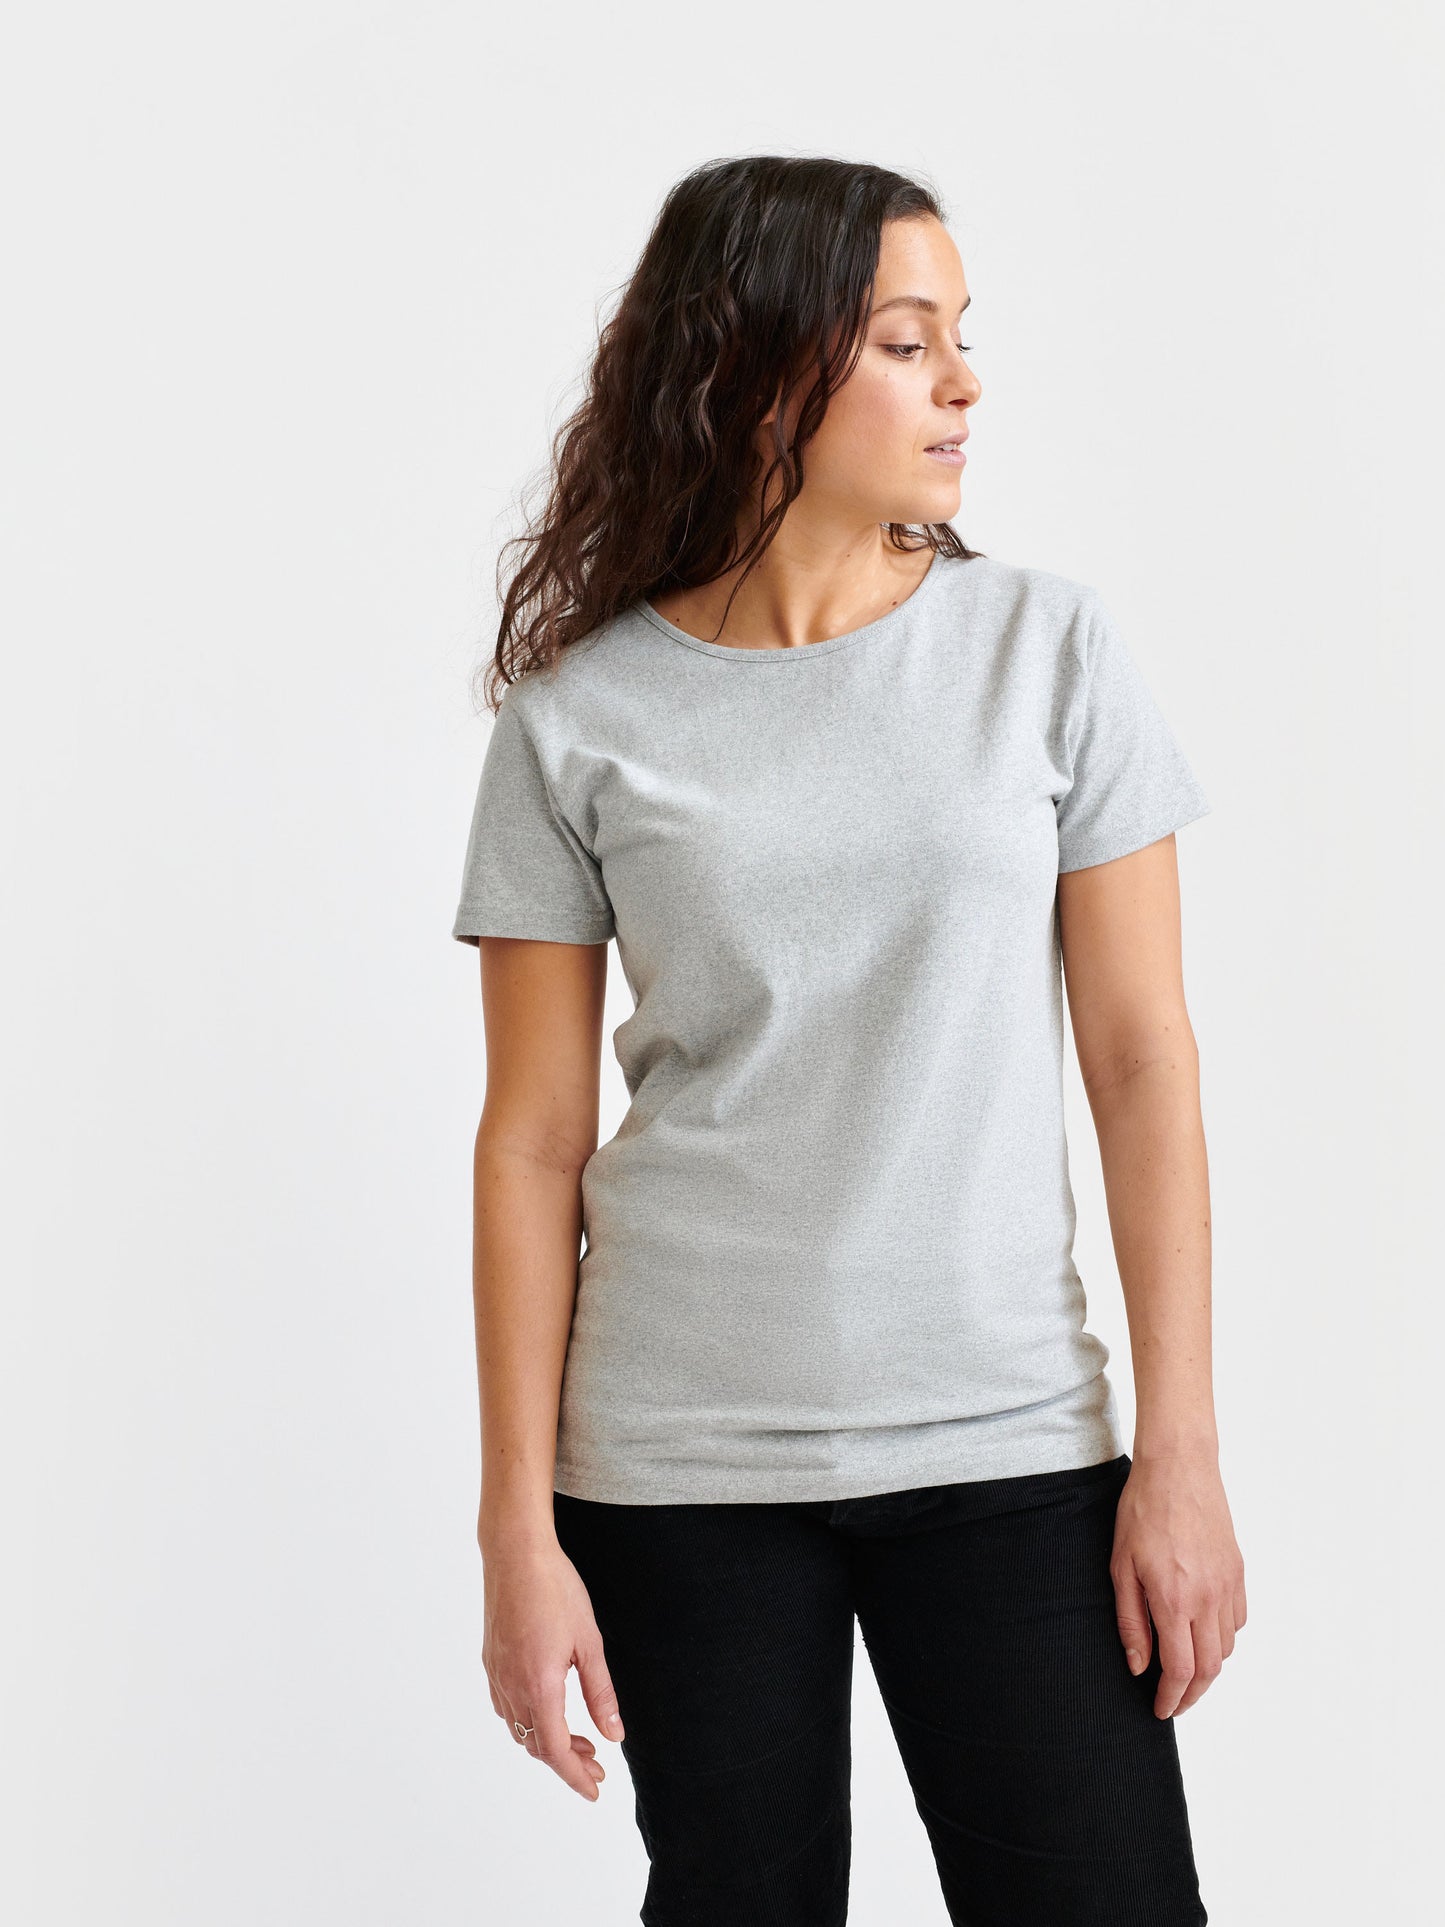 T-Shirt Frauen kurzarm